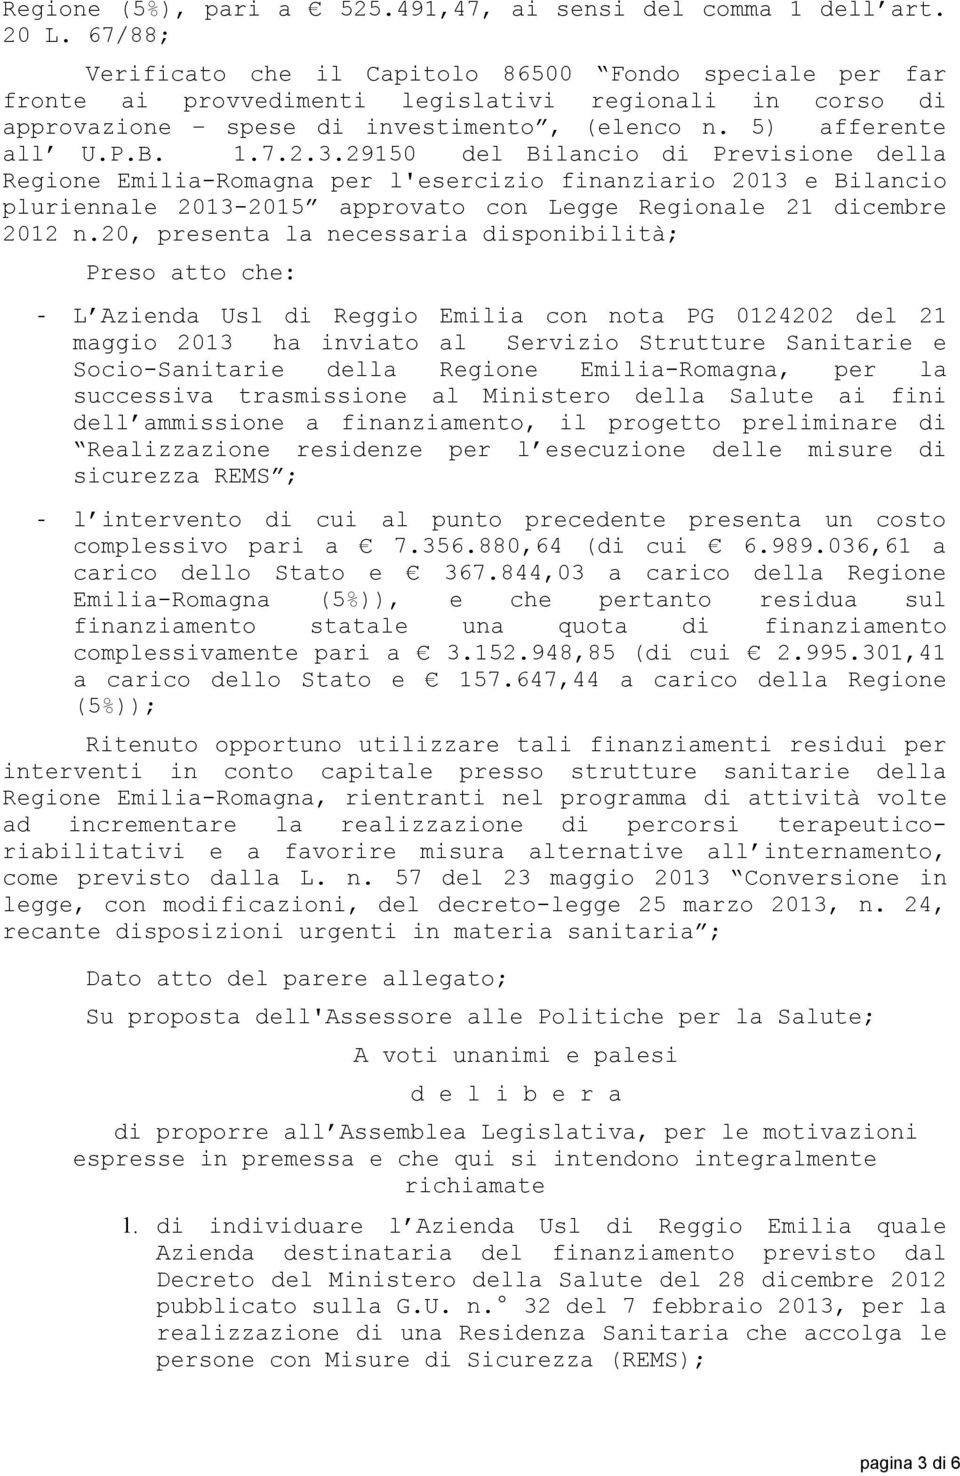 29150 del Bilancio di Previsione della Regione Emilia-Romagna per l'esercizio finanziario 2013 e Bilancio pluriennale 2013-2015 approvato con Legge Regionale 21 dicembre 2012 n.